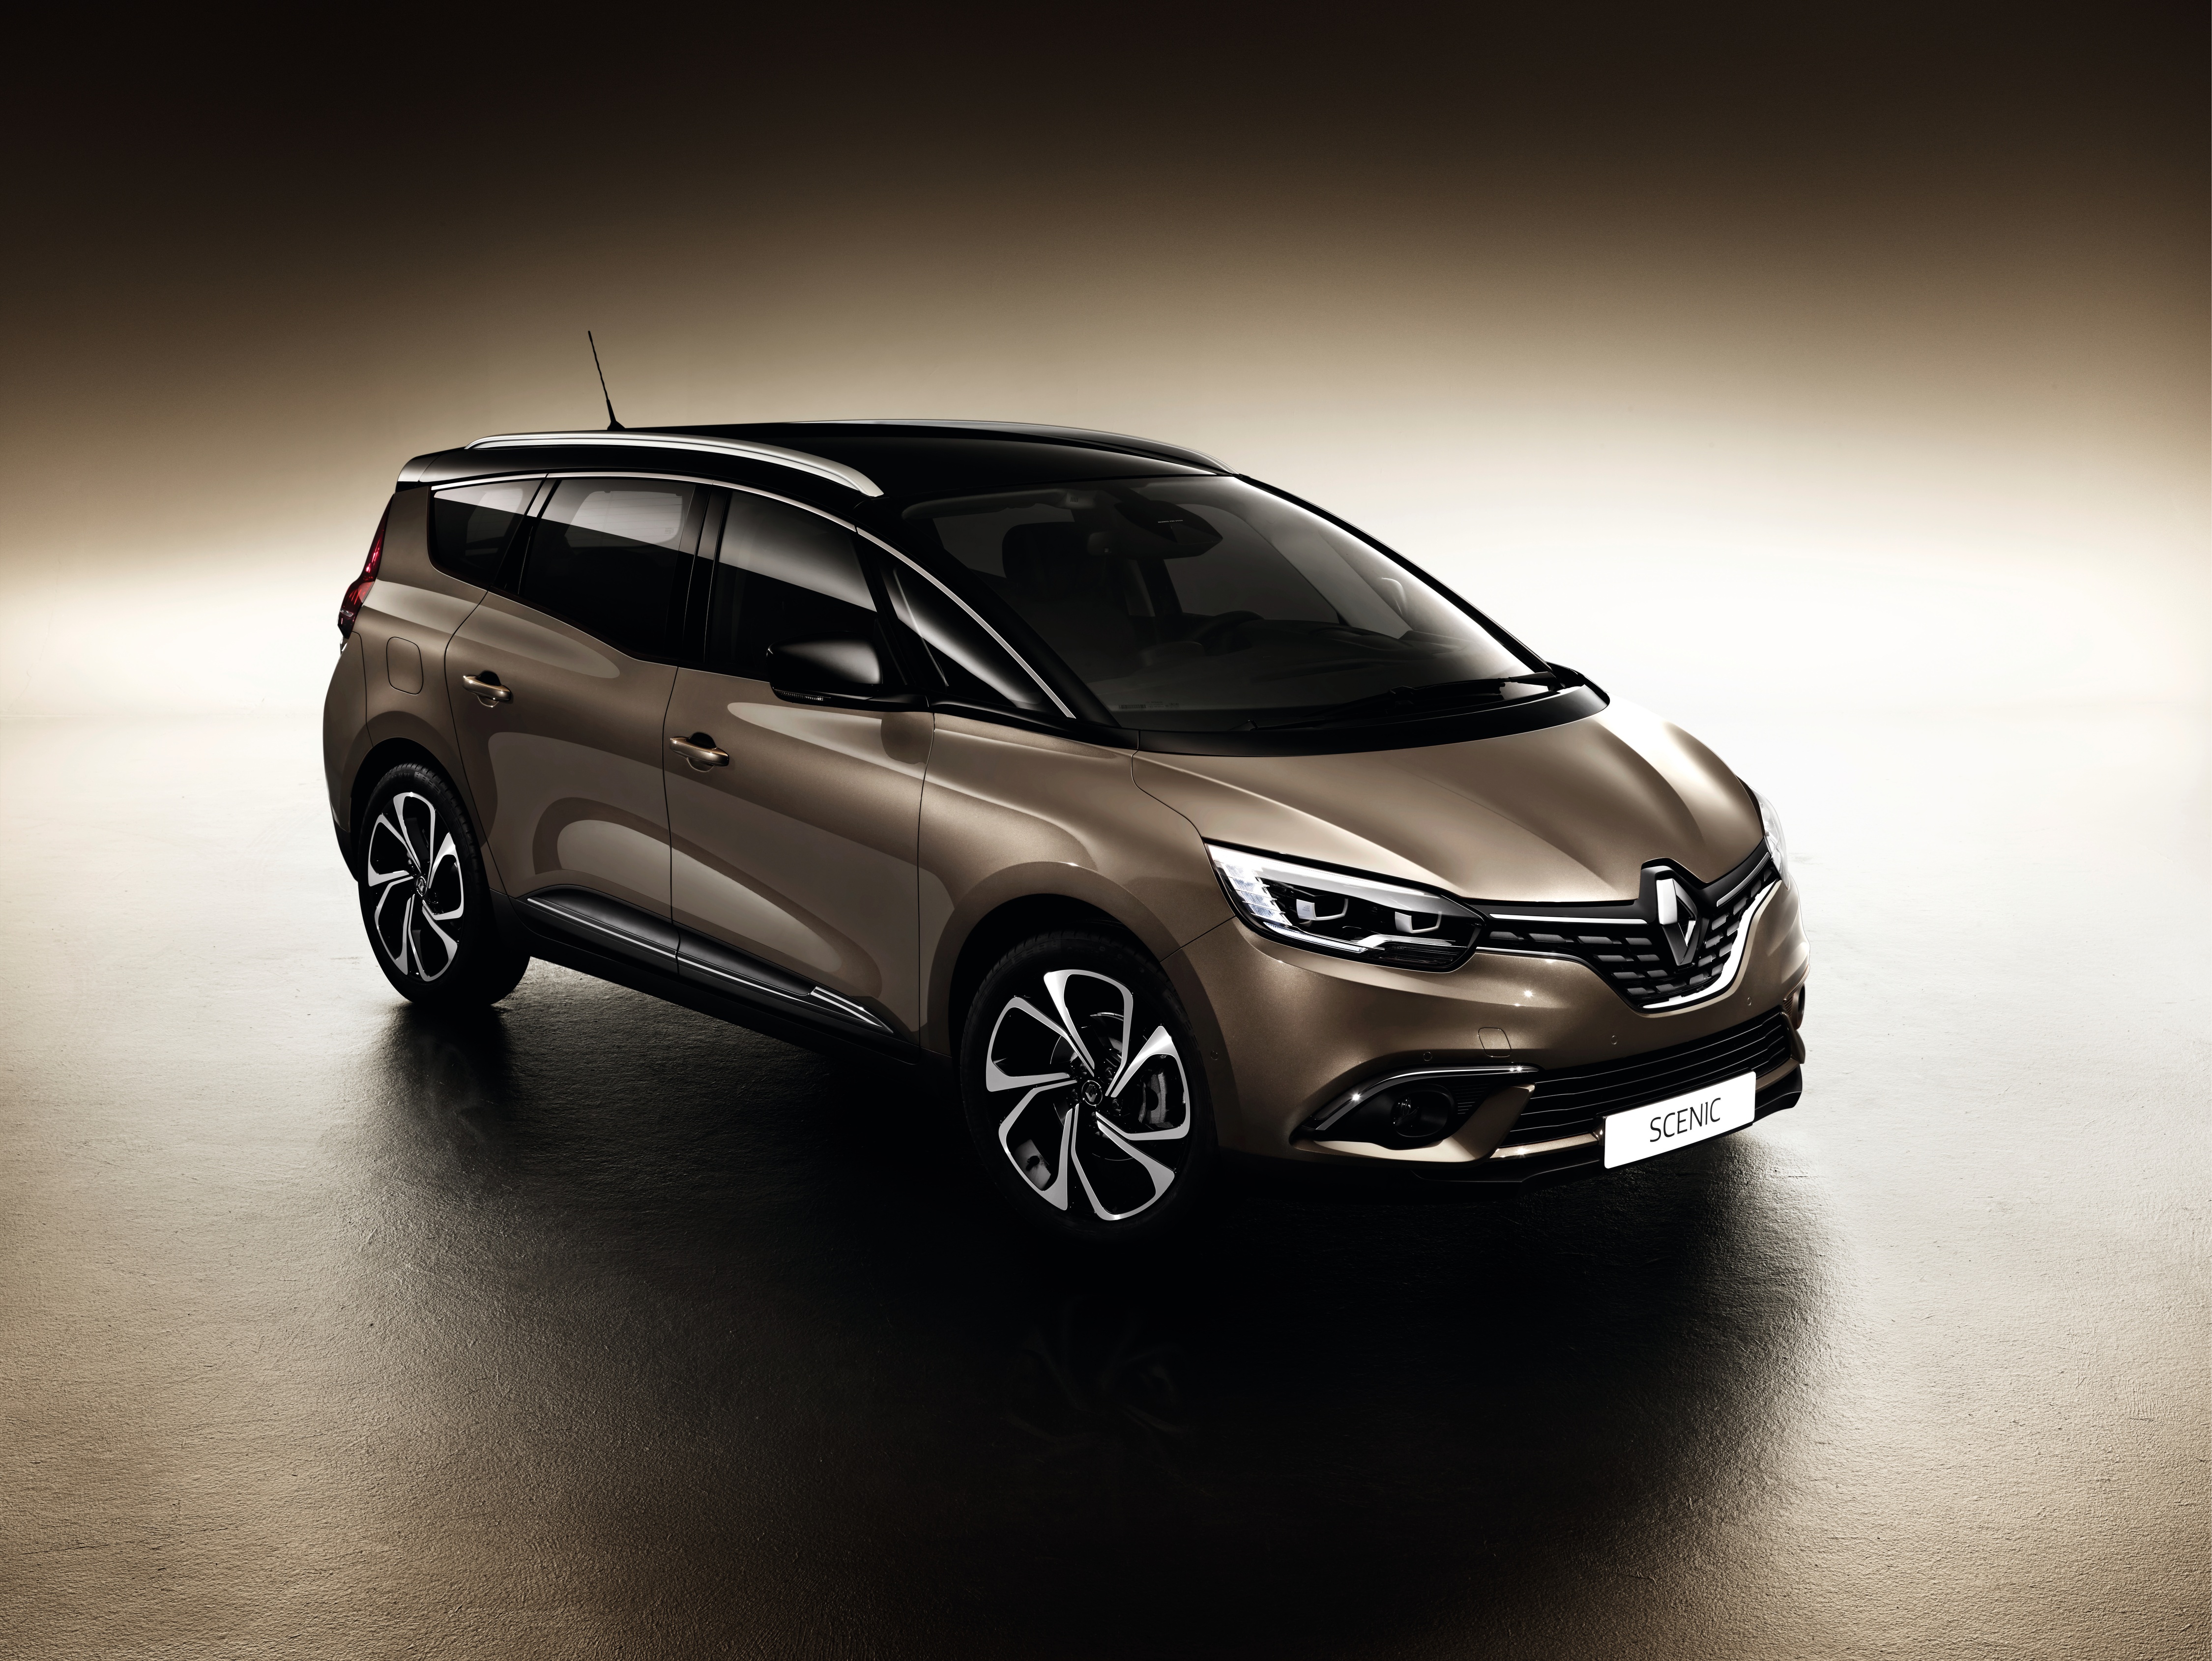 Første fotos af nye Renault Grand Scenic afslører en bil